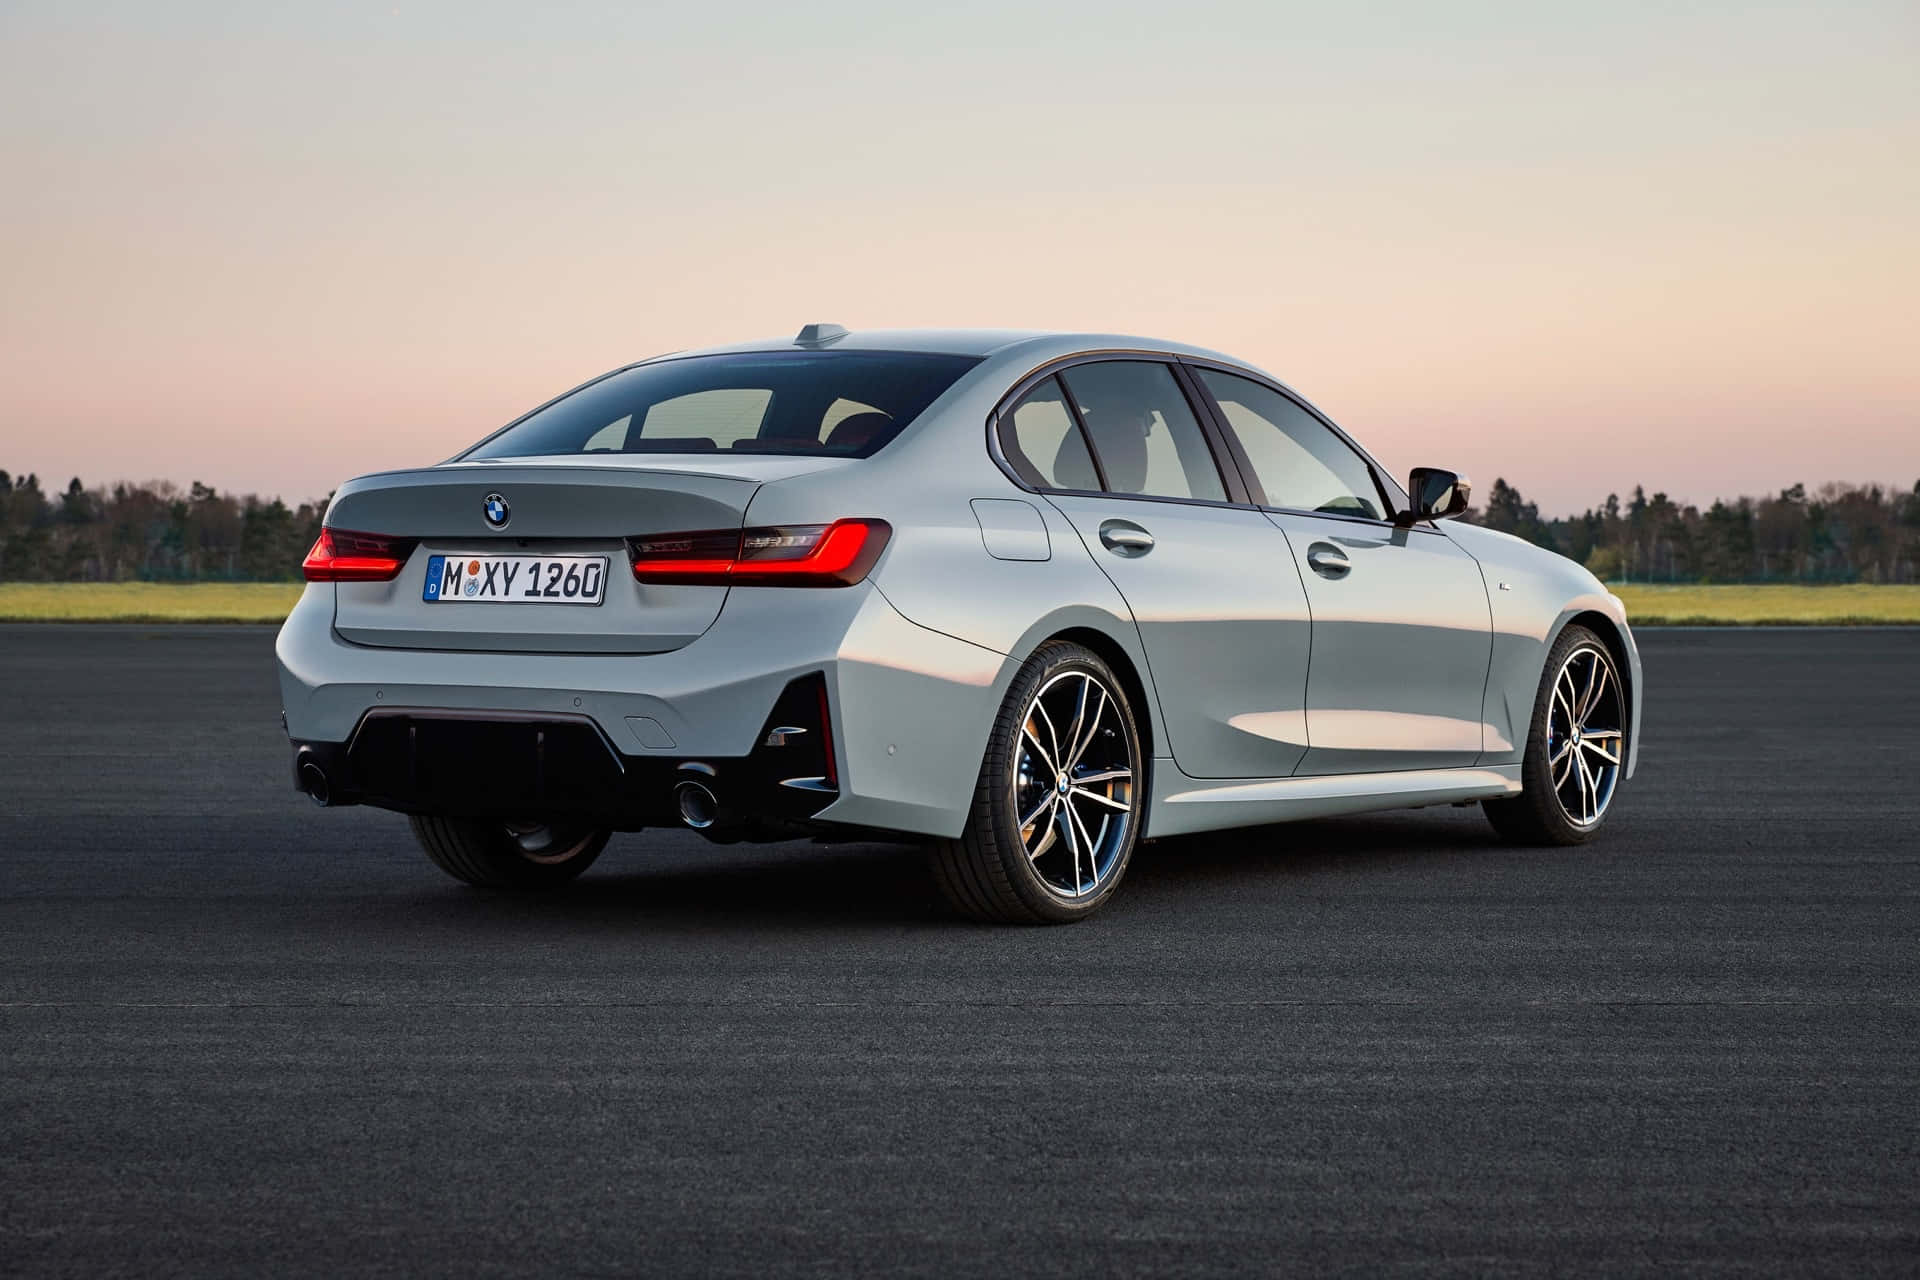 Perfekt udformet BMW ikoner afbilder den moderne livsstil.